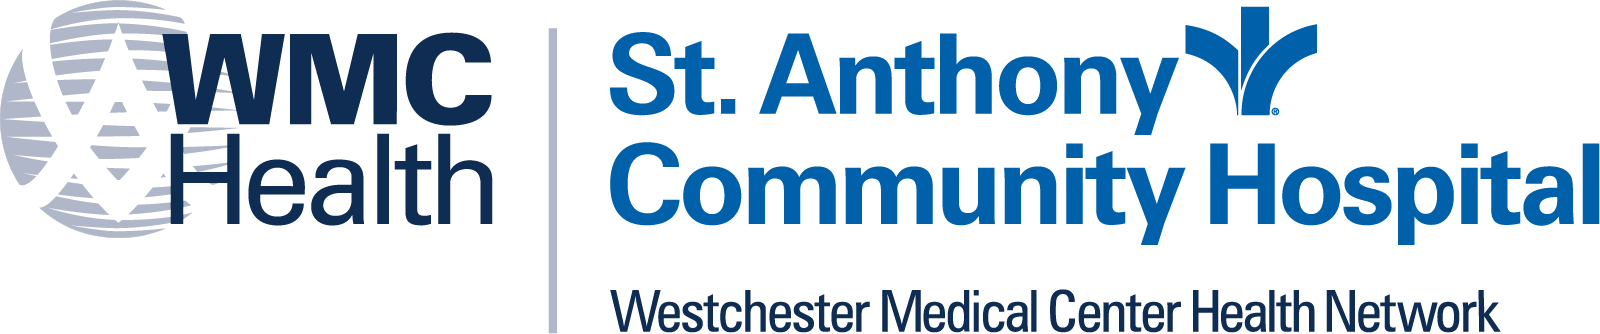 St. Anthony Community Hospital